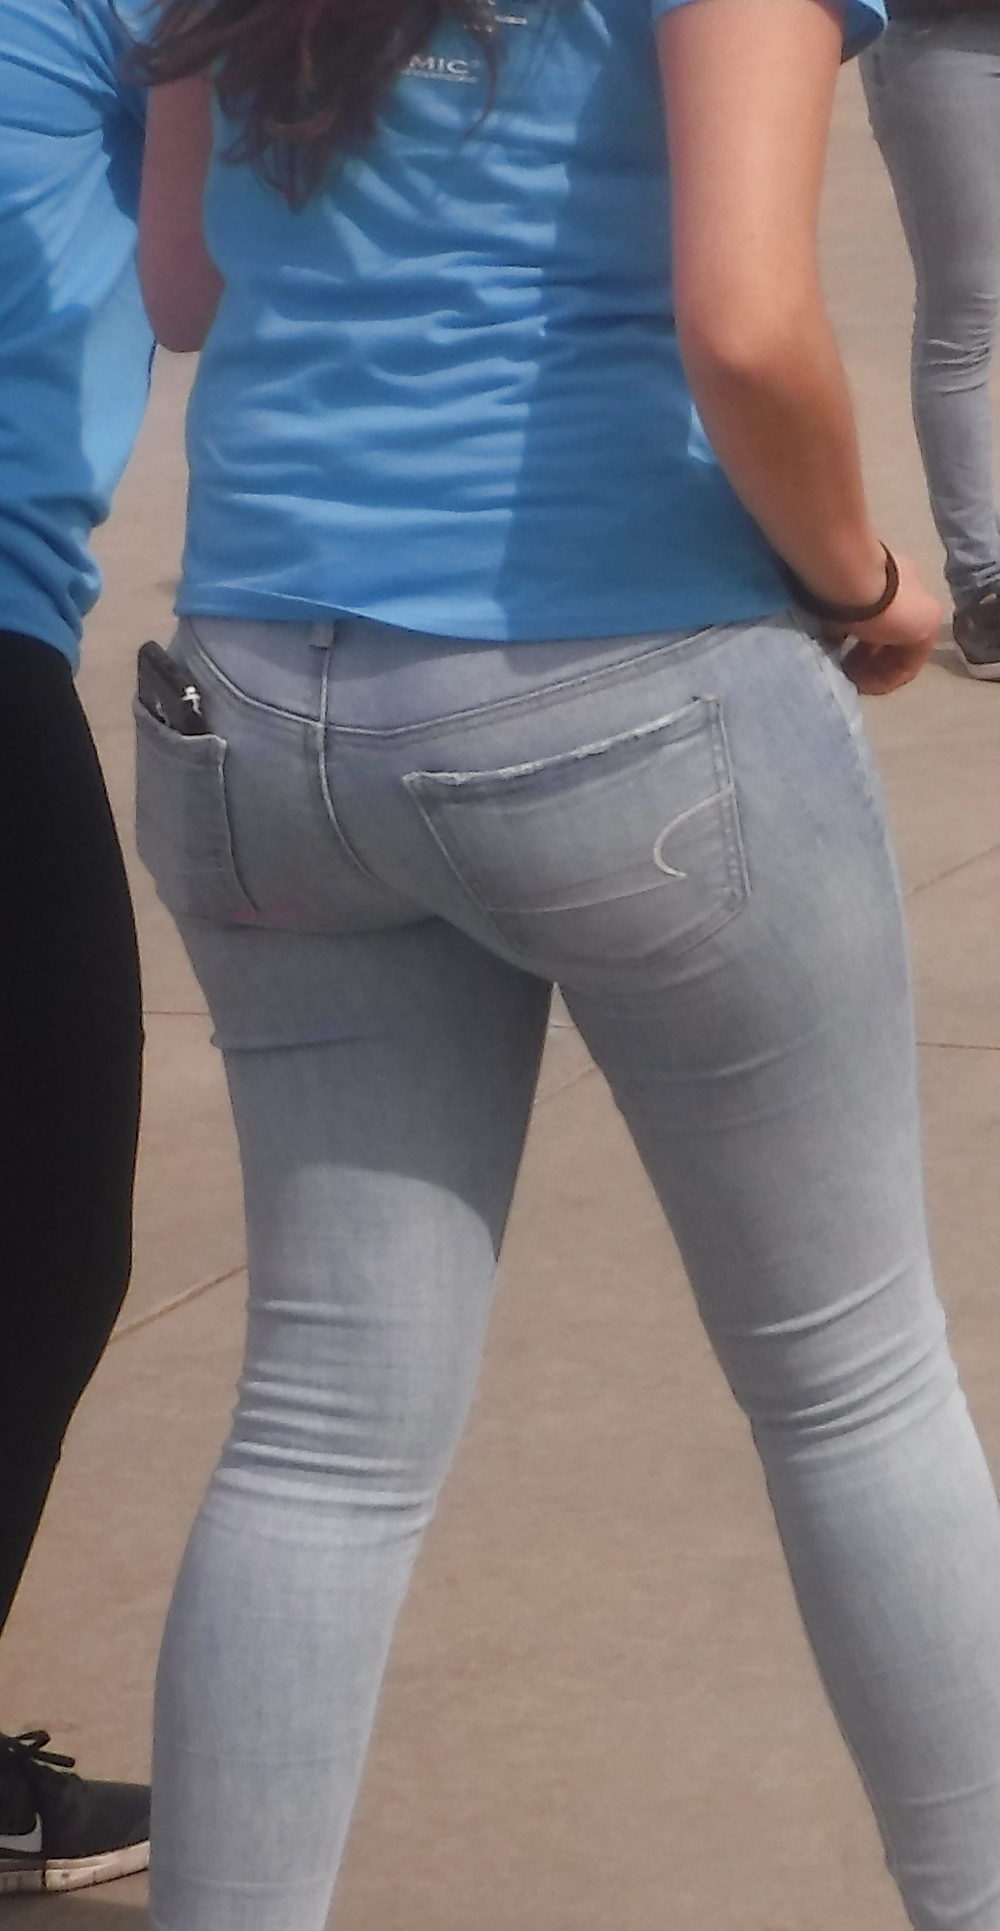 Her teen ass & butt in jeans  (5/23)